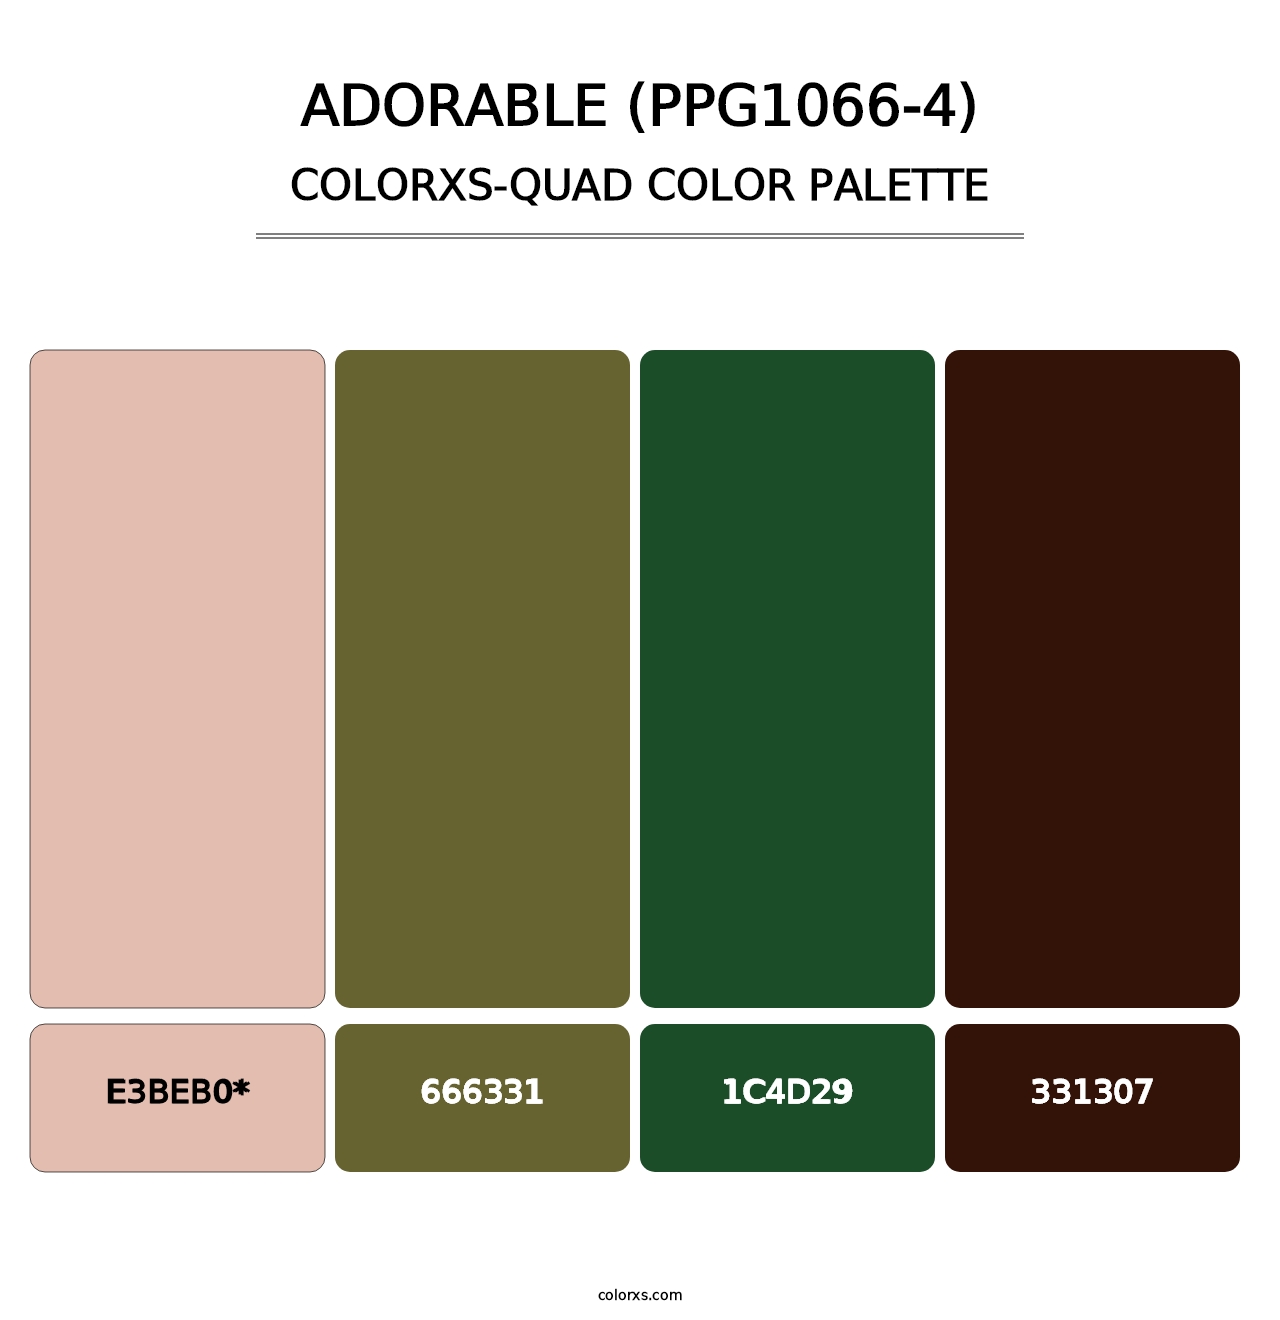 Adorable (PPG1066-4) - Colorxs Quad Palette